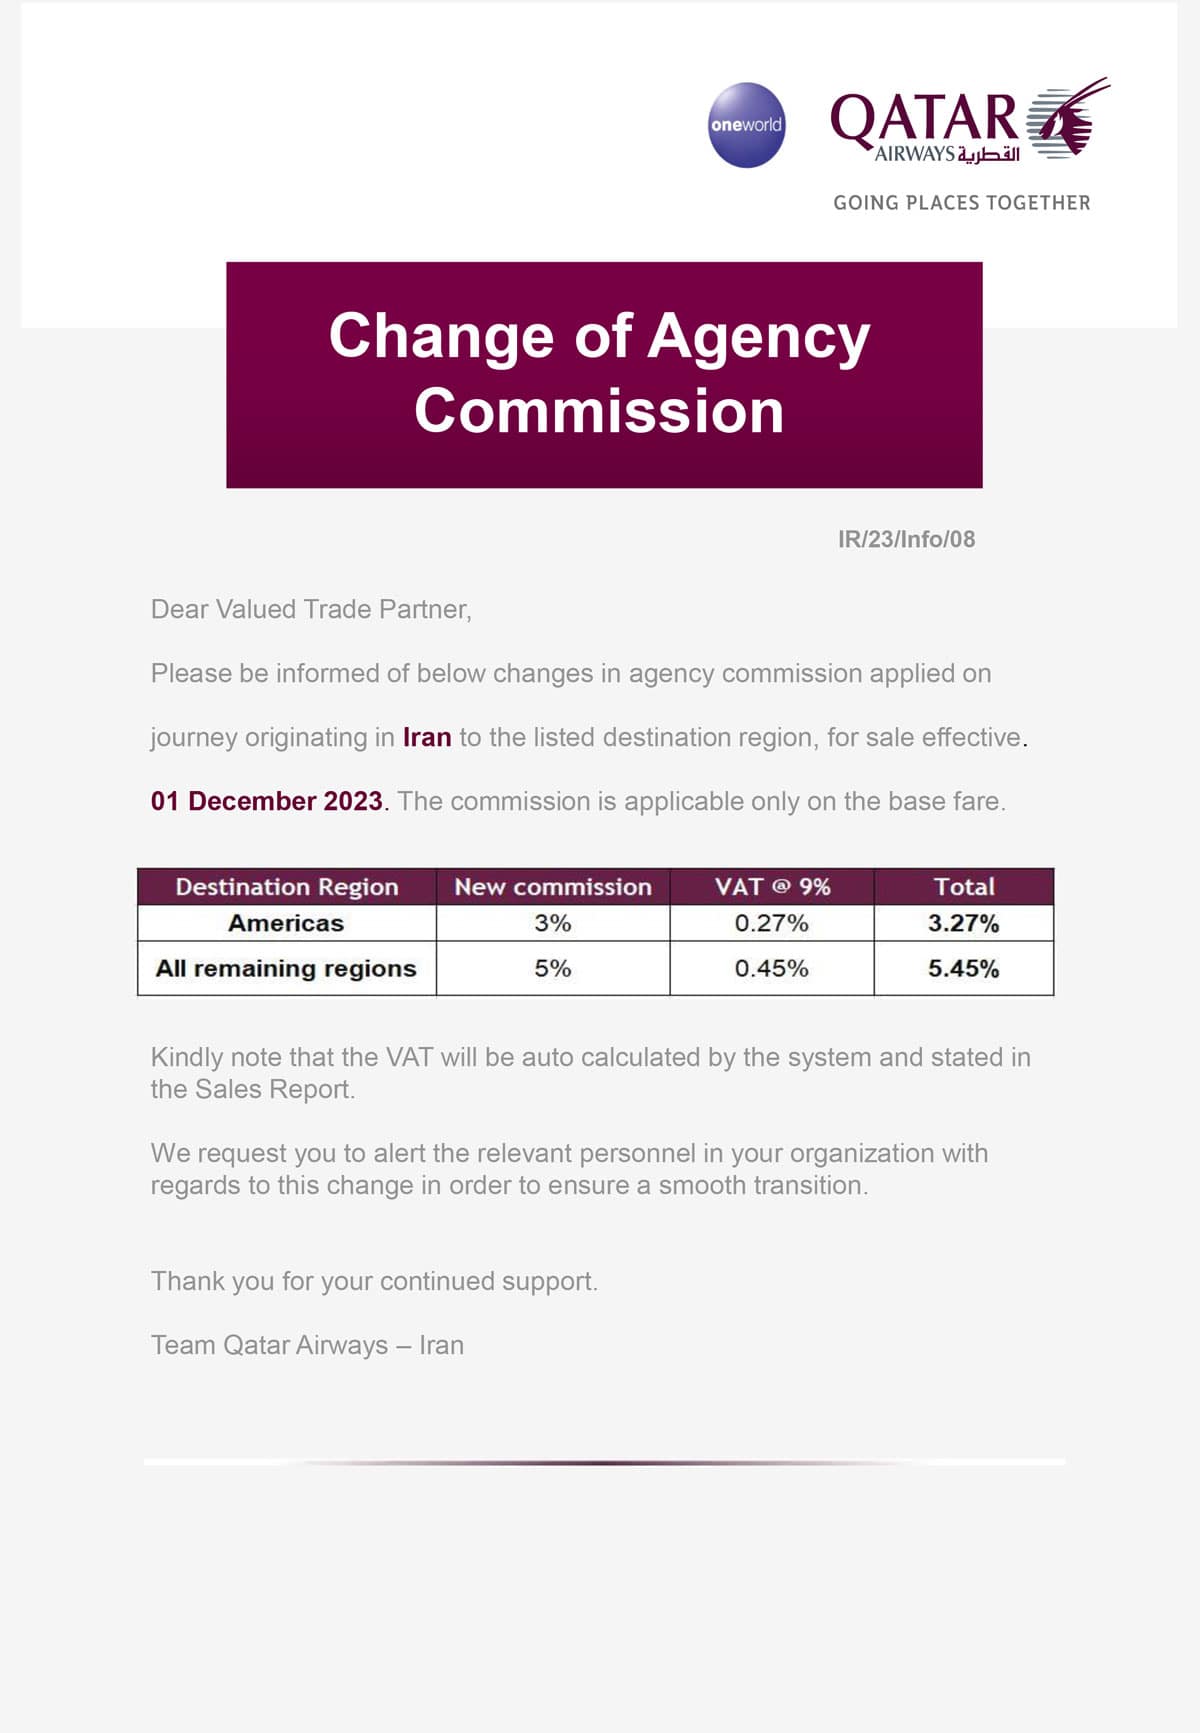  ترجمه بخشنامه هواپیمایی قطر اطلاعیه هواپیمایی قطر درباره تغییر کمیسیون آژانسهای هواپیمایی